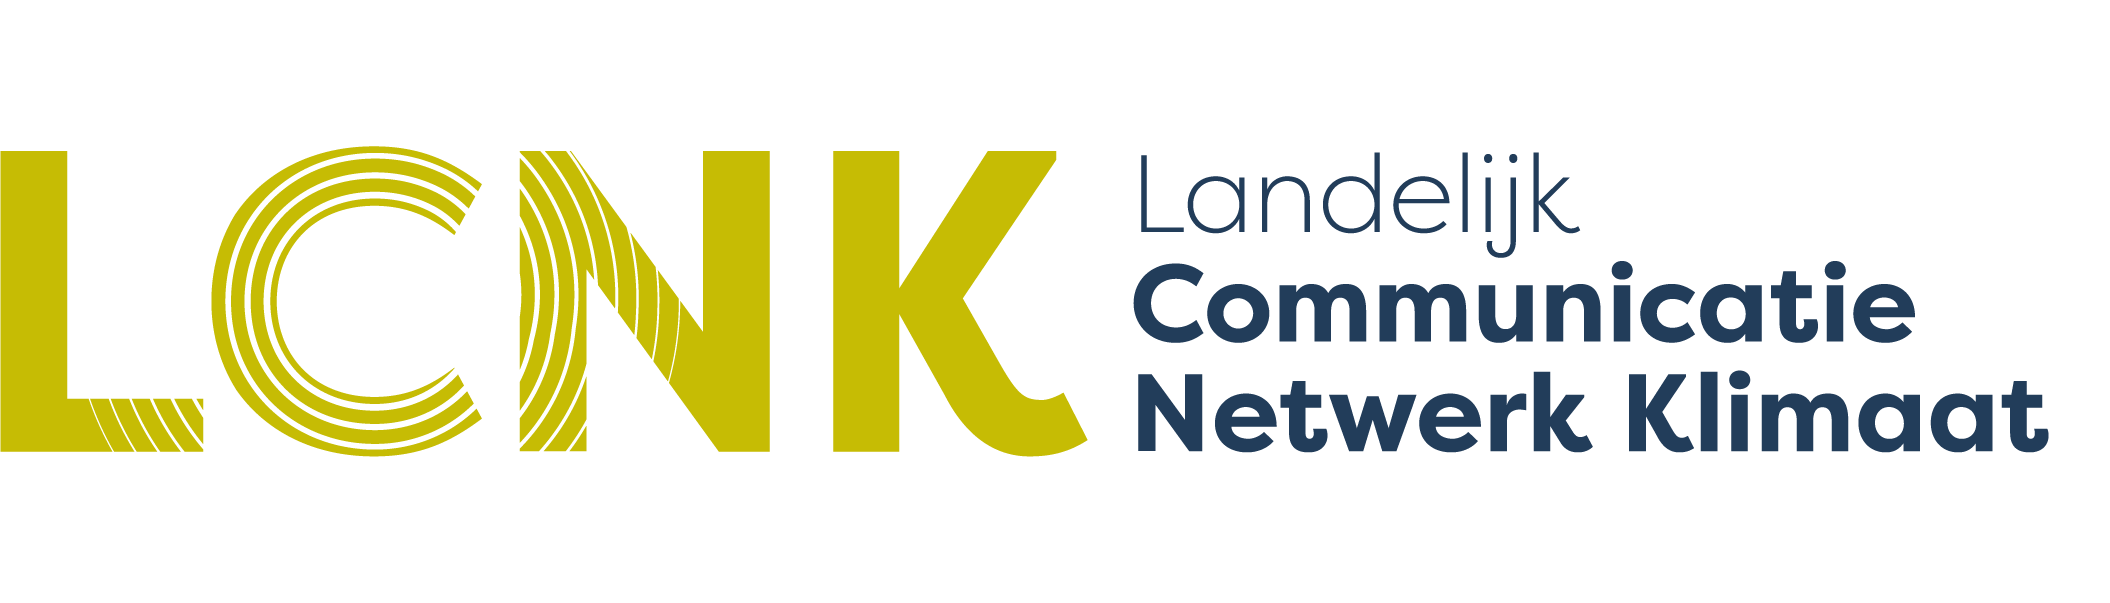 Landelijk Communicatie Netwerk Klimaat logo